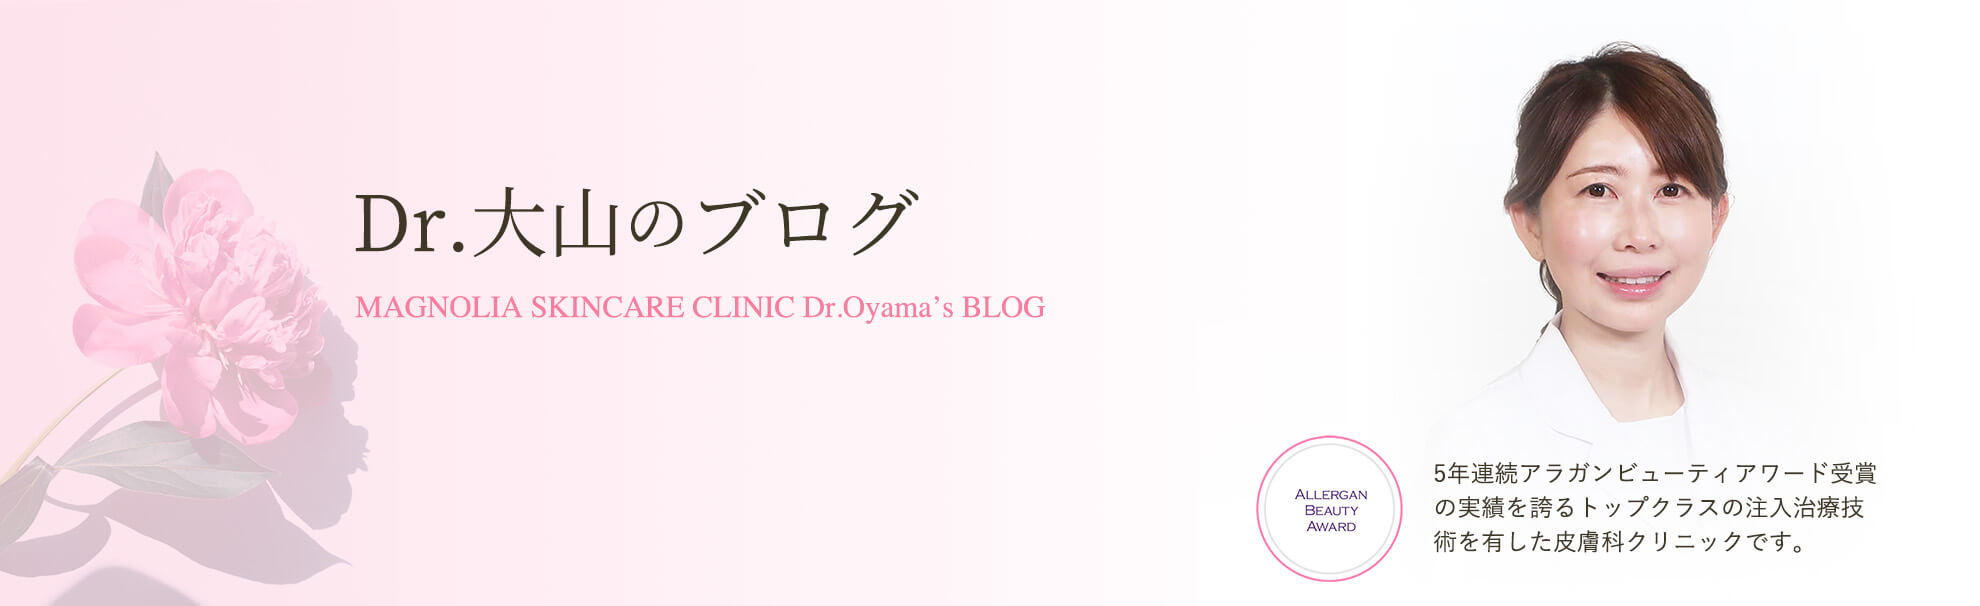 Dr.大山のブログキービジュアル